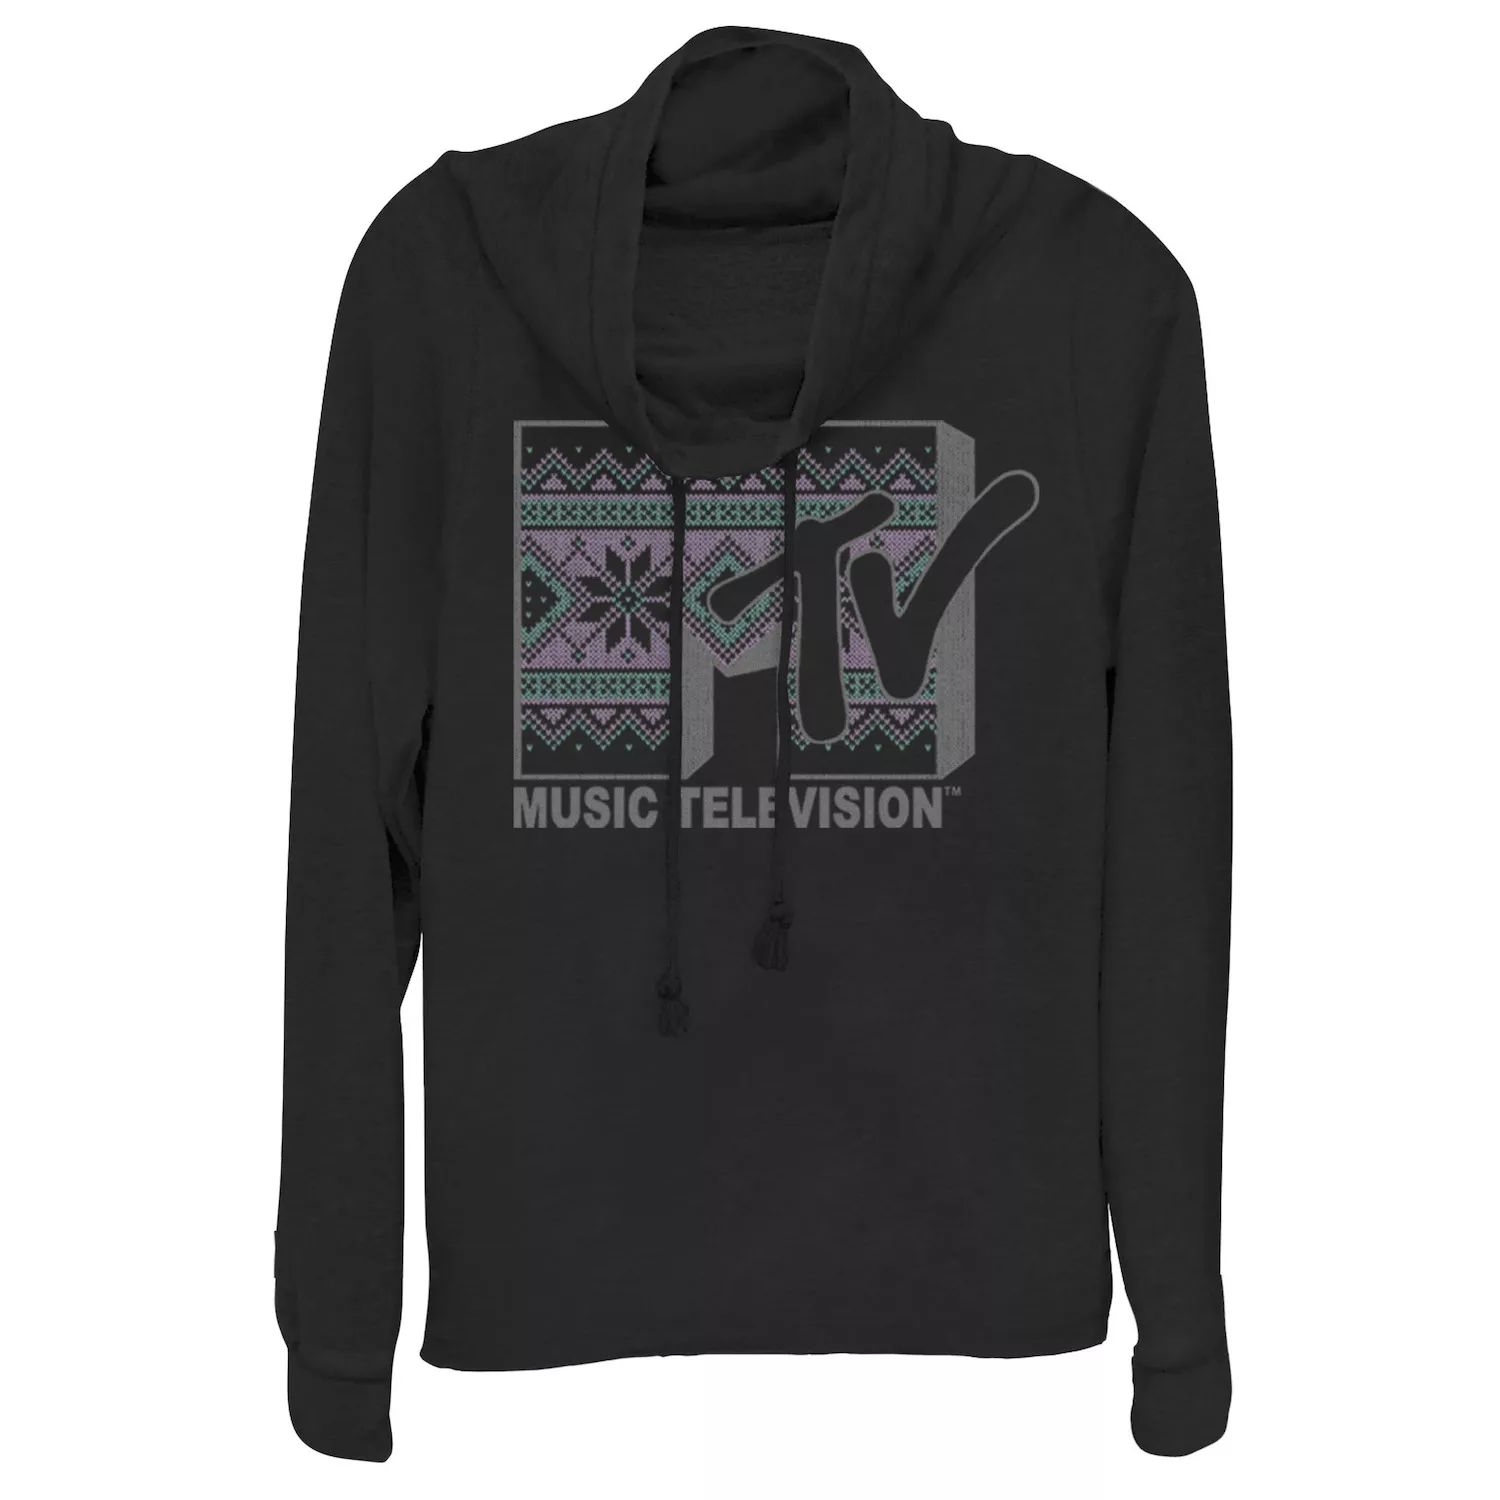 Вязаный пуловер с воротником-хомутом и тематическим логотипом MTV для юниоров Licensed Character